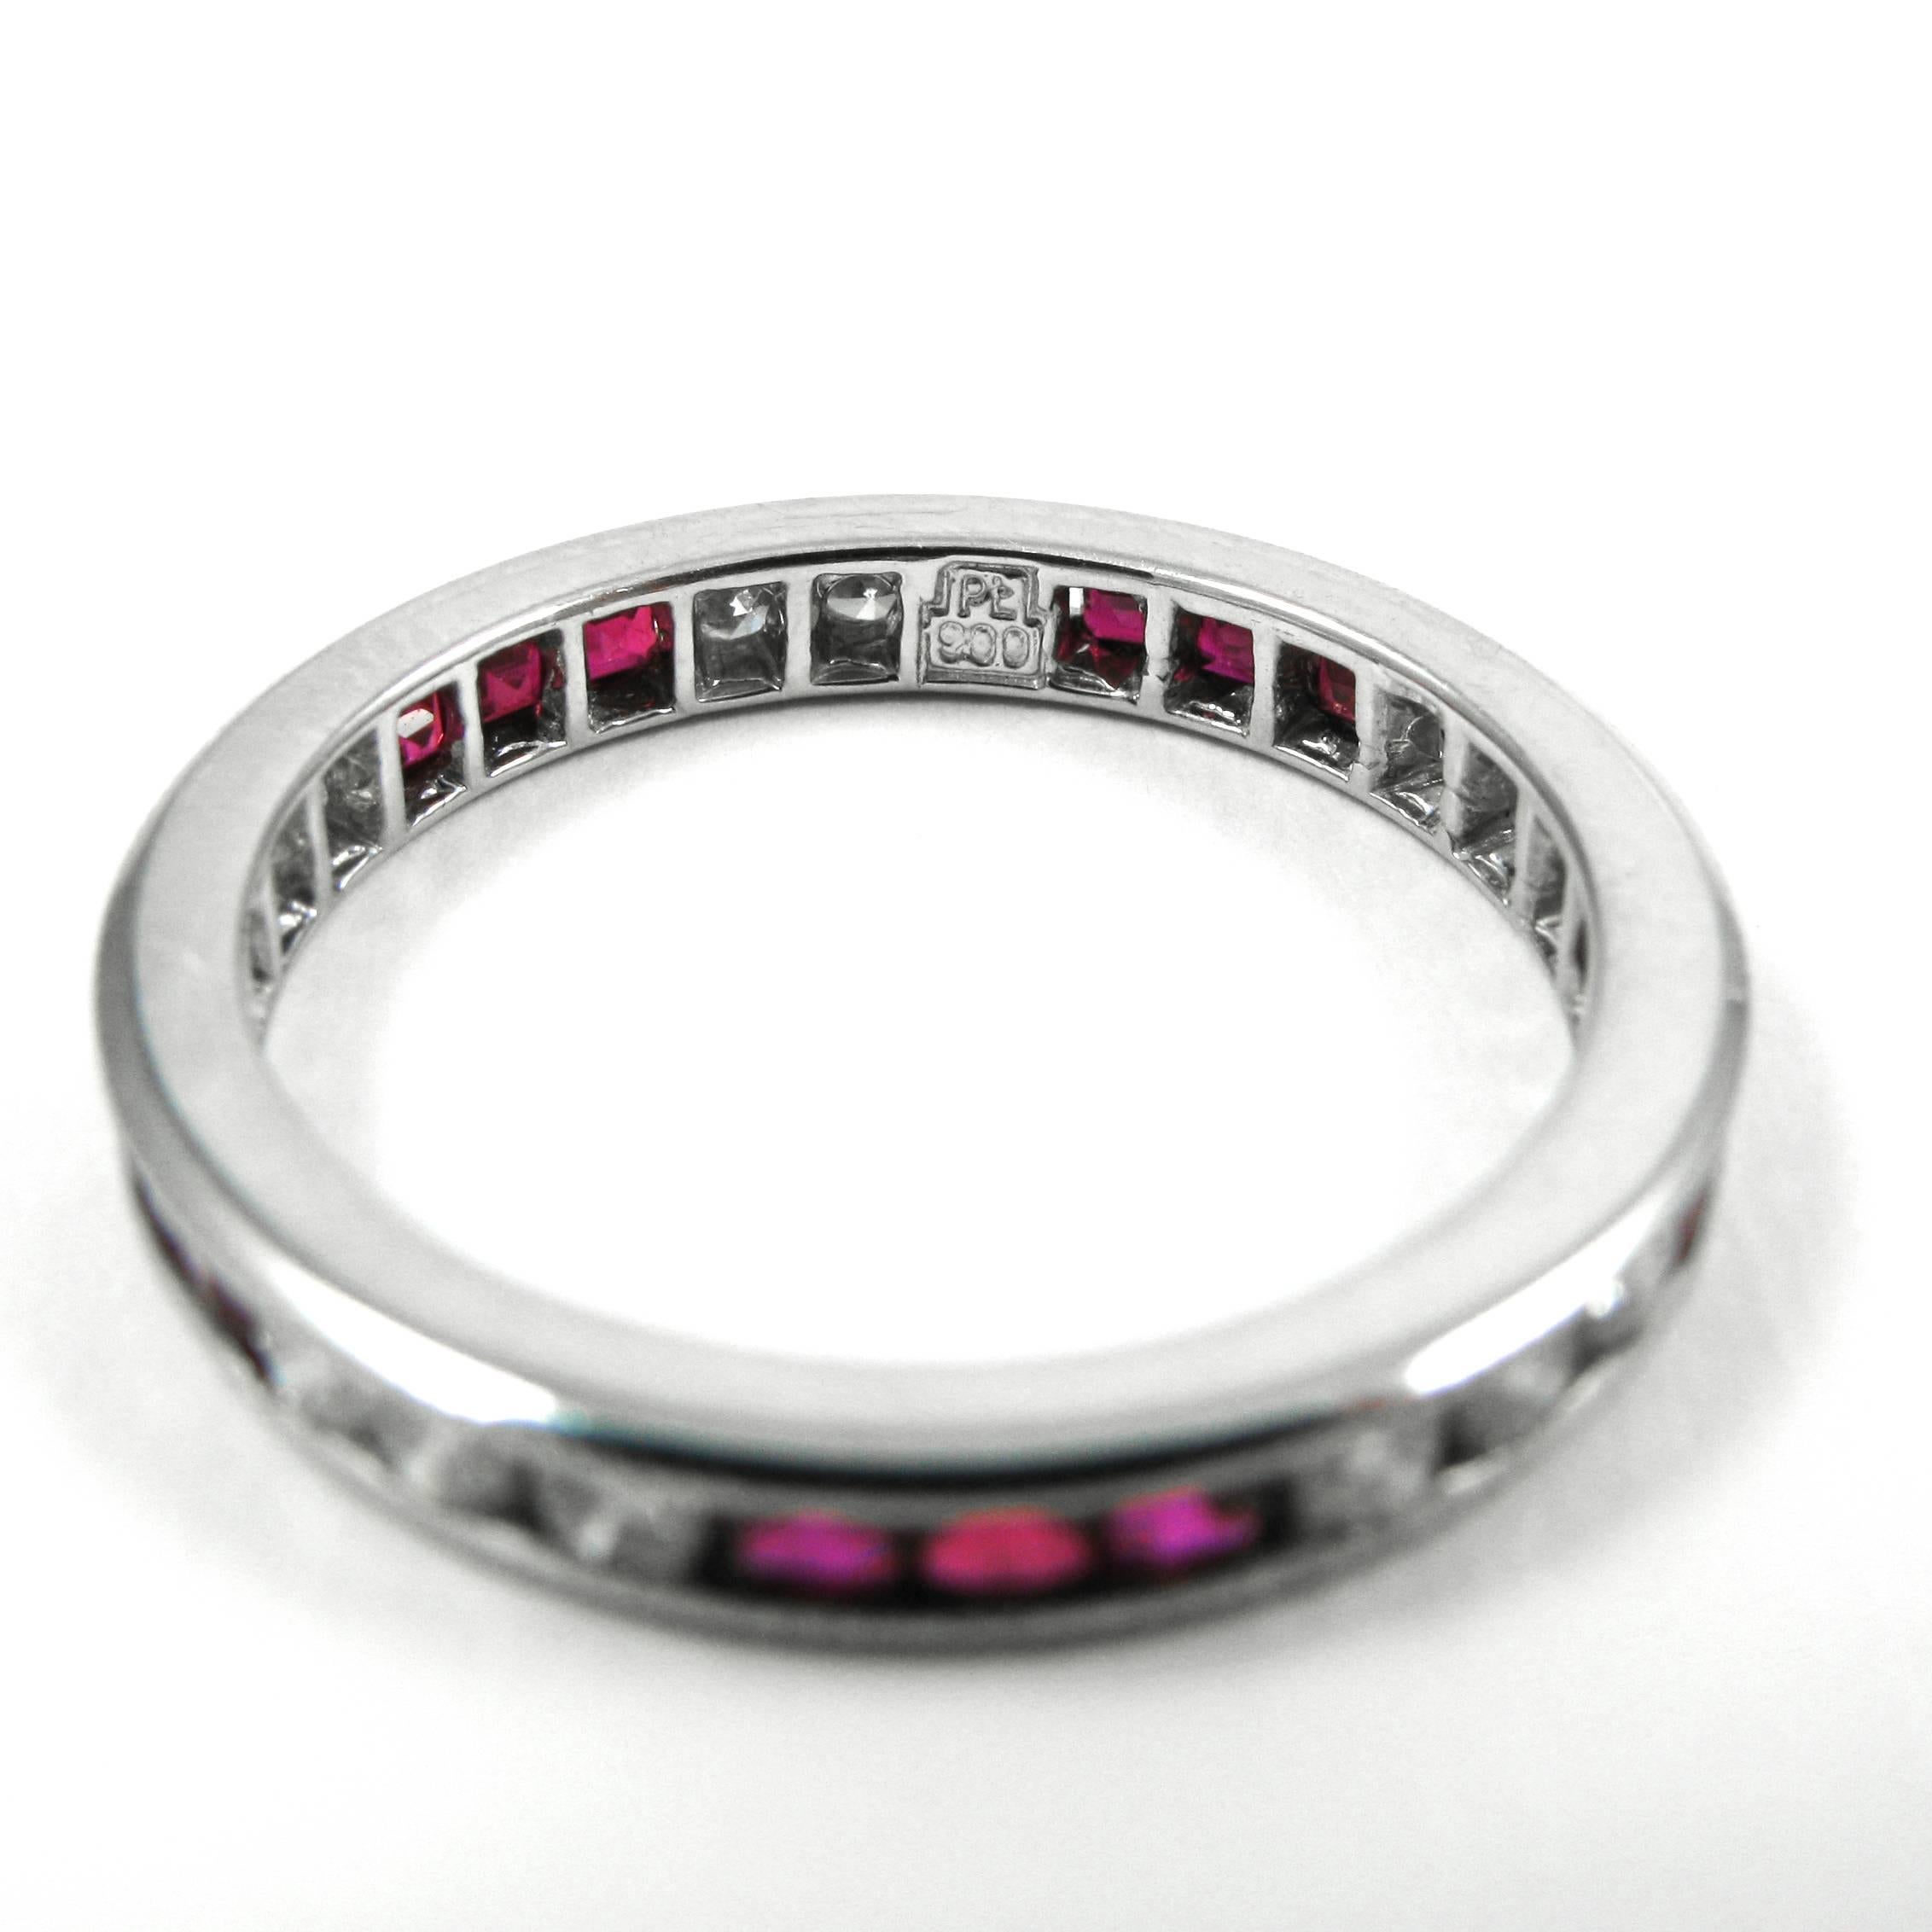 Cet adorable bracelet éternité vintage en diamants et rubis est parfait pour être empilé ! La bague en platine comporte 15 diamants de taille ronde (environ 0,75 ctw)  et 15 rubis carrés enchâssés dans des séries alternées de trois avec des détails